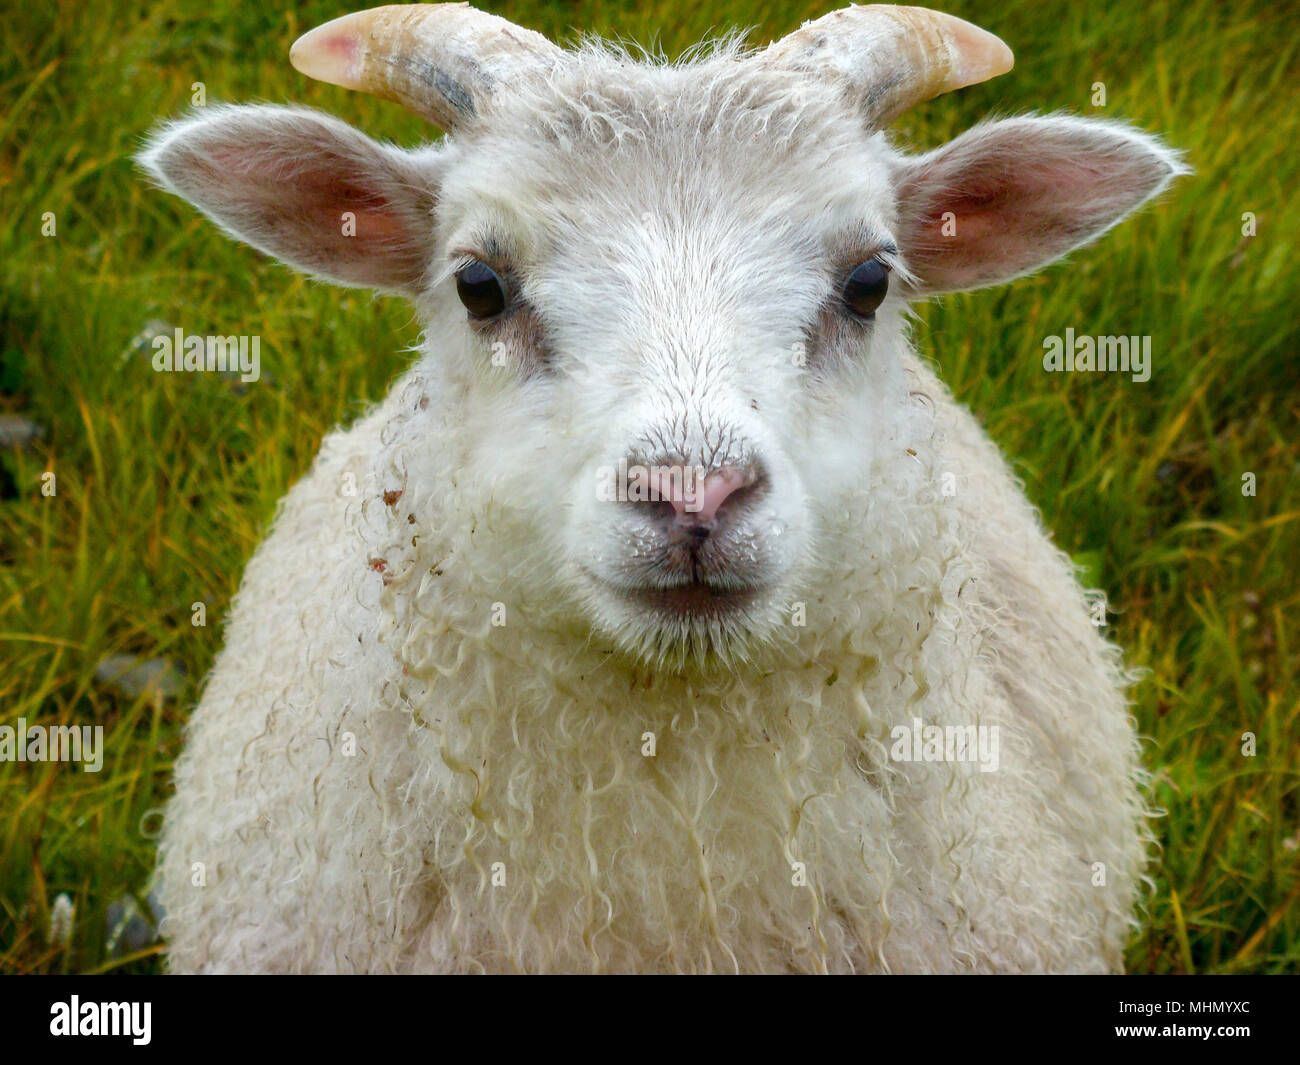 newborn baby white ram sheep under the rain and grass background Stock  Photo - Alamy